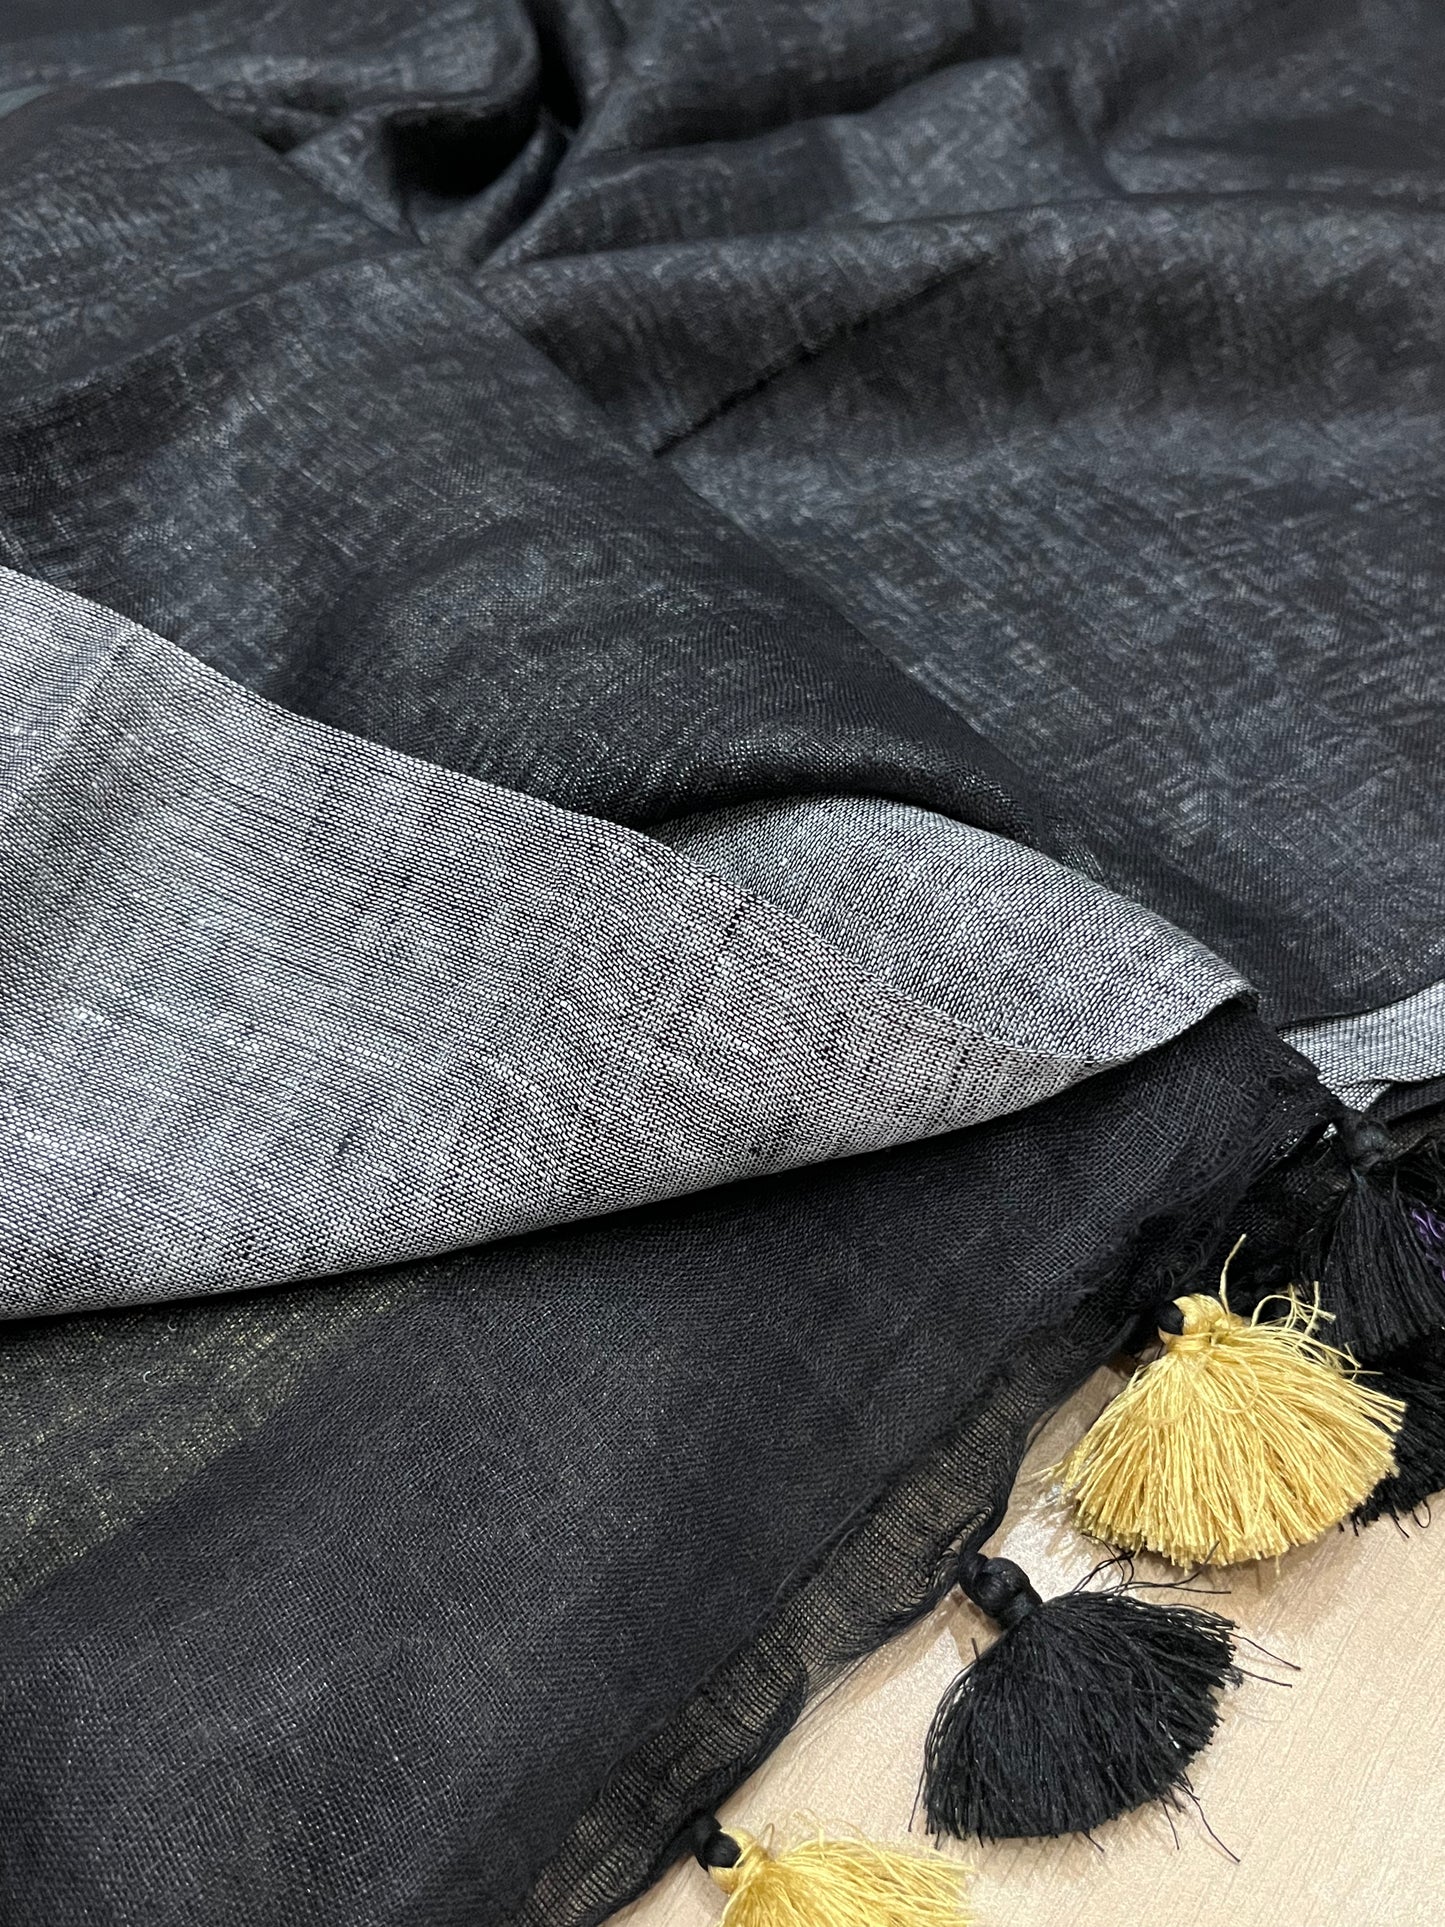 Black & Grey Handwoven organic Linen Saree | Contrast pallu | KIHUMS Saree